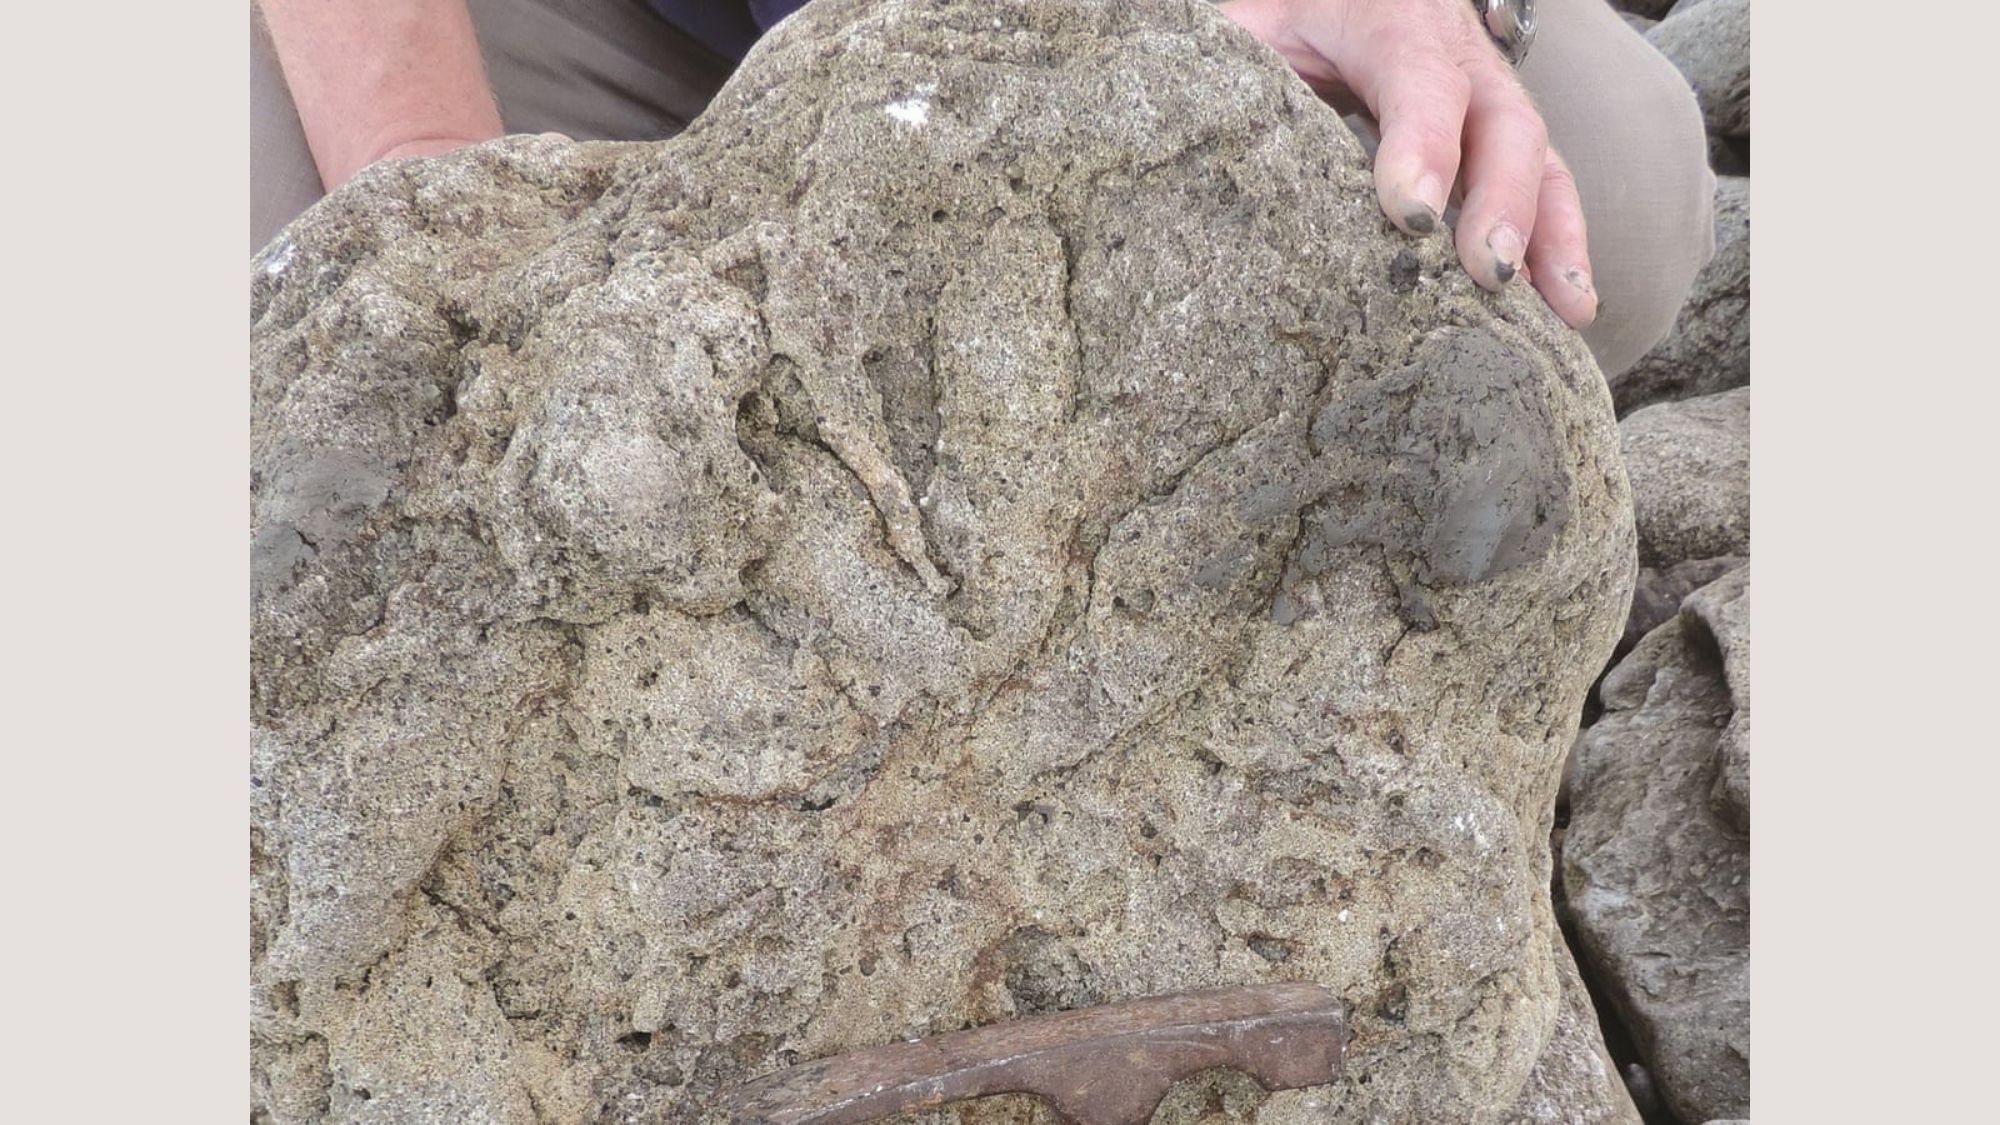 Footprints of last dinos that walked on earth found in U.K.